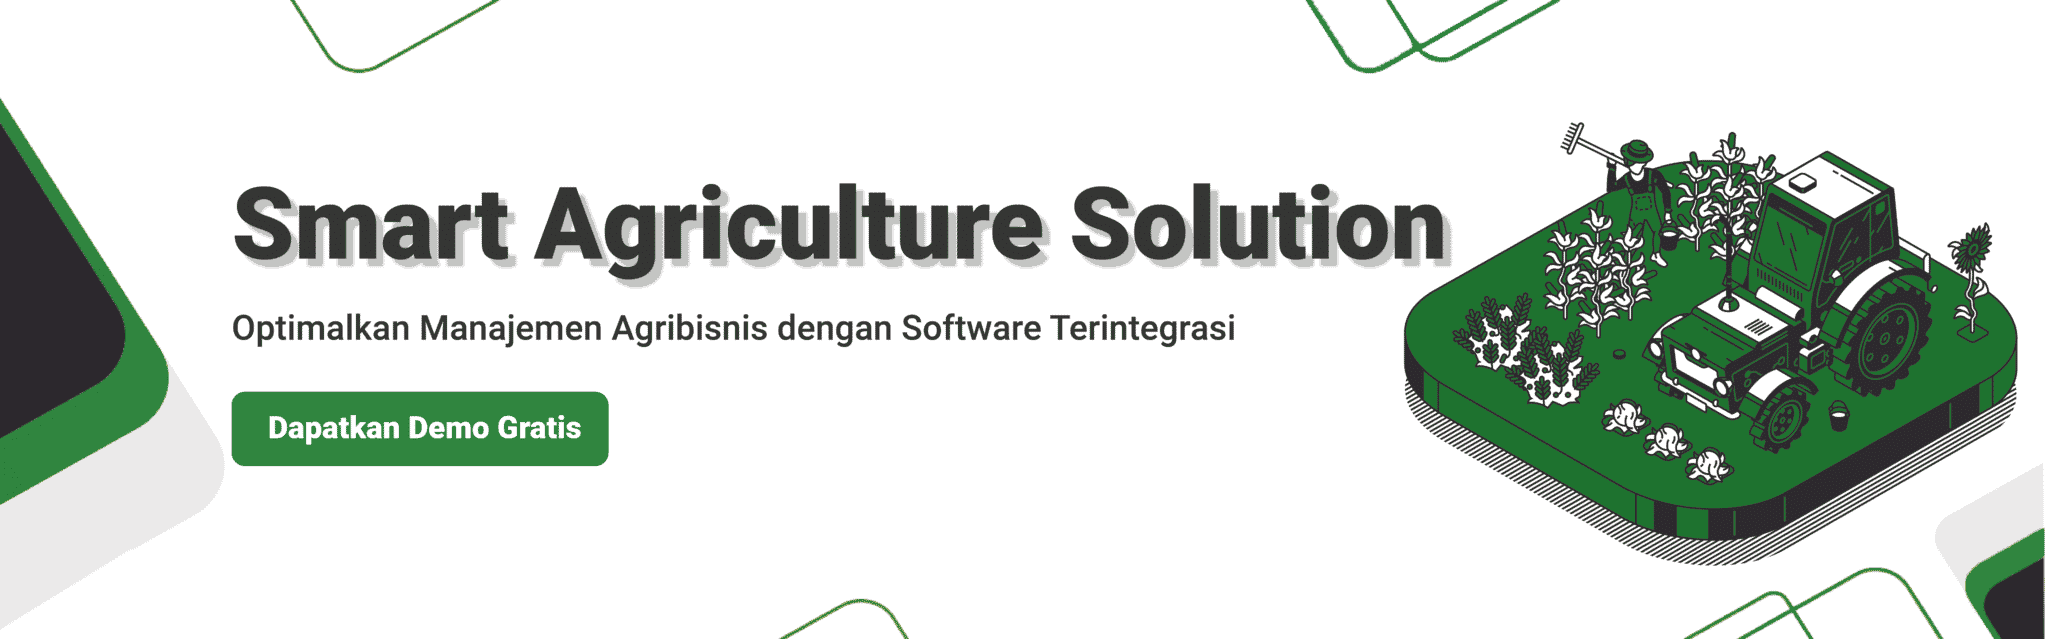 software pertanian (https://petanidigital.id/aplikasi-pertanian/)